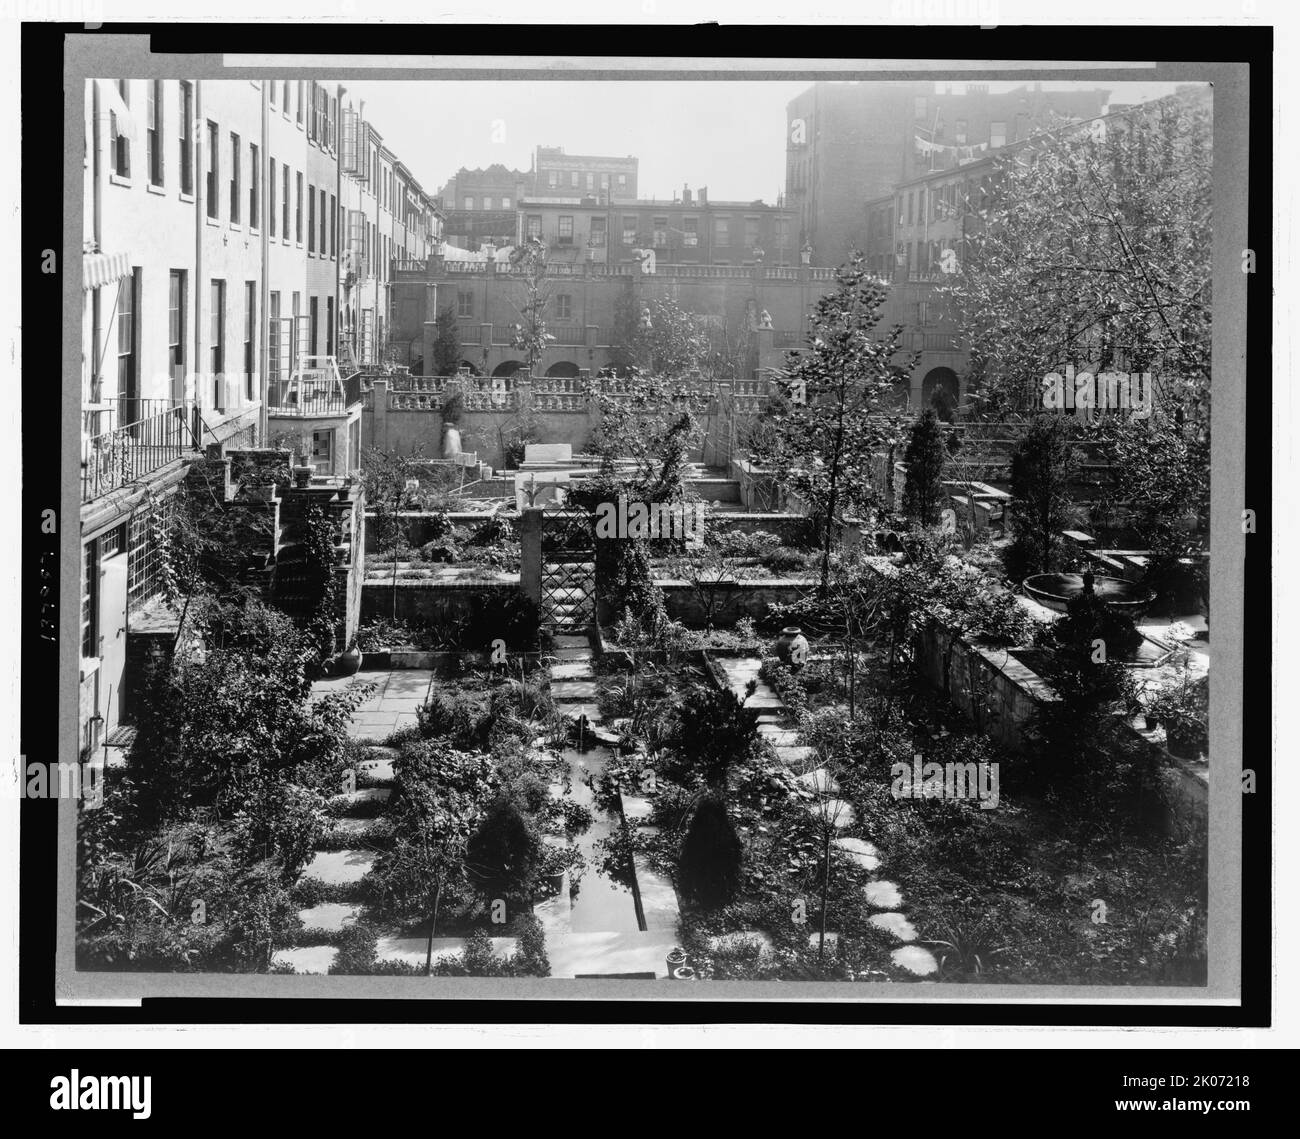 Giardini nel cortile a New York City, 1920. La fotografia mostra i Giardini di Turtle Bay, 227-247 East 48th Street e 228-246 East 49th Street, New York, New York; vista ad est del giardino comune. Foto Stock